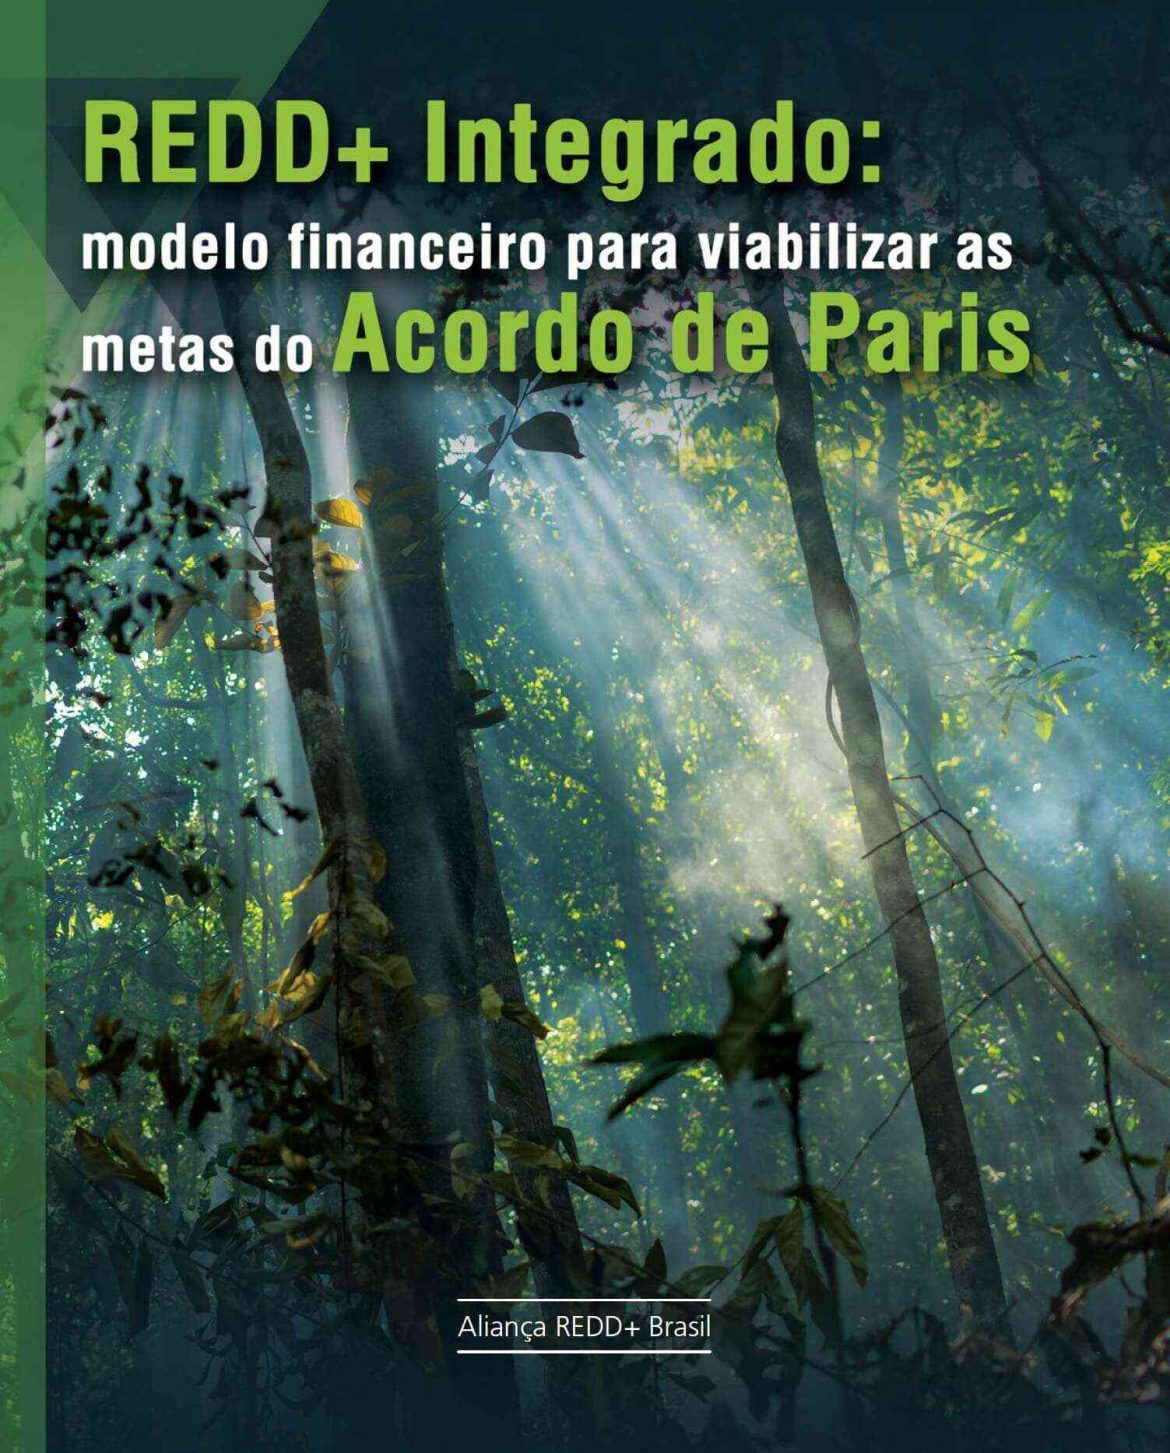 Capa de publicação feita pela Aliança REED+ Brasil.